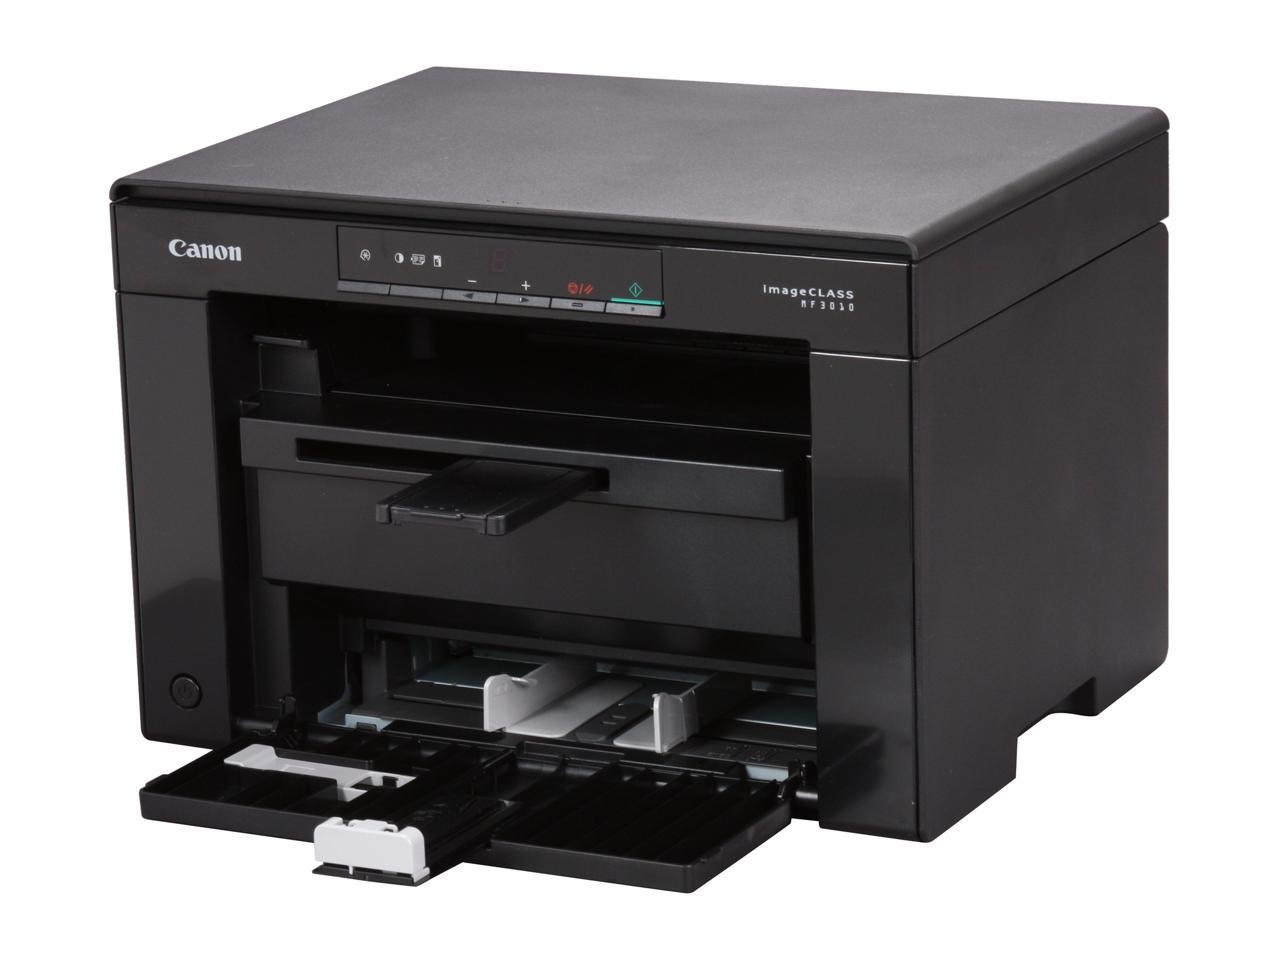 Canon imageCLASS MF3010 Monochrome All-in-One Laser Printer